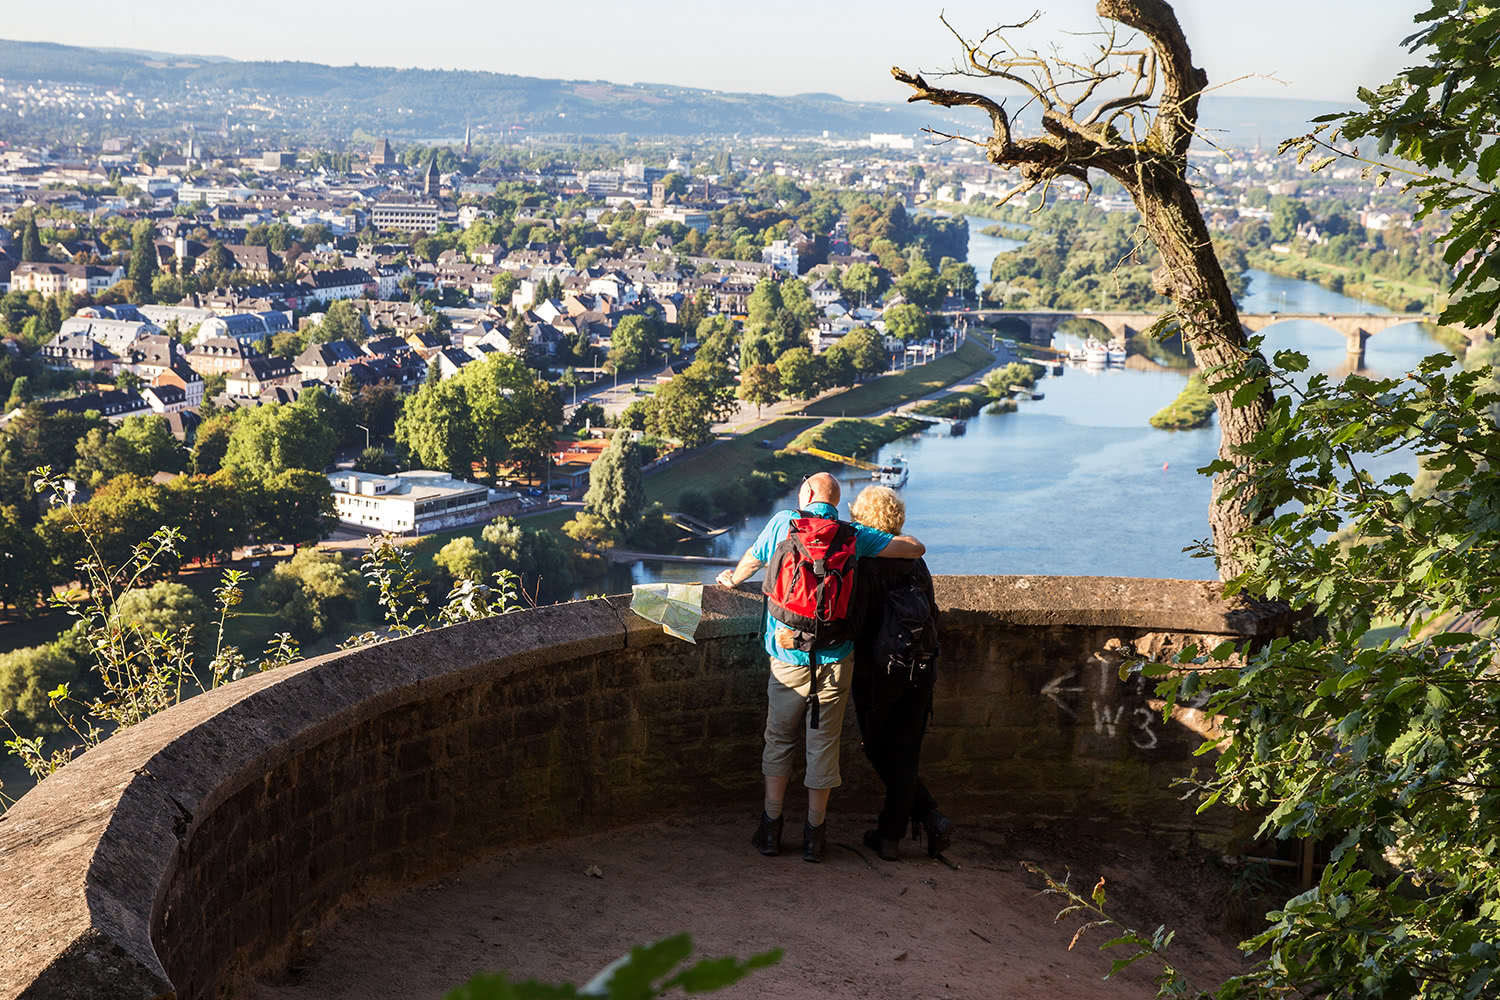 Bild von zwei Personen die an einer Mauer einer Aussiechtsplatform des Mosel Steig stehen und sich die Landschaft anschauen. Zu sehen ist die Mosel mit Blick auf Trier